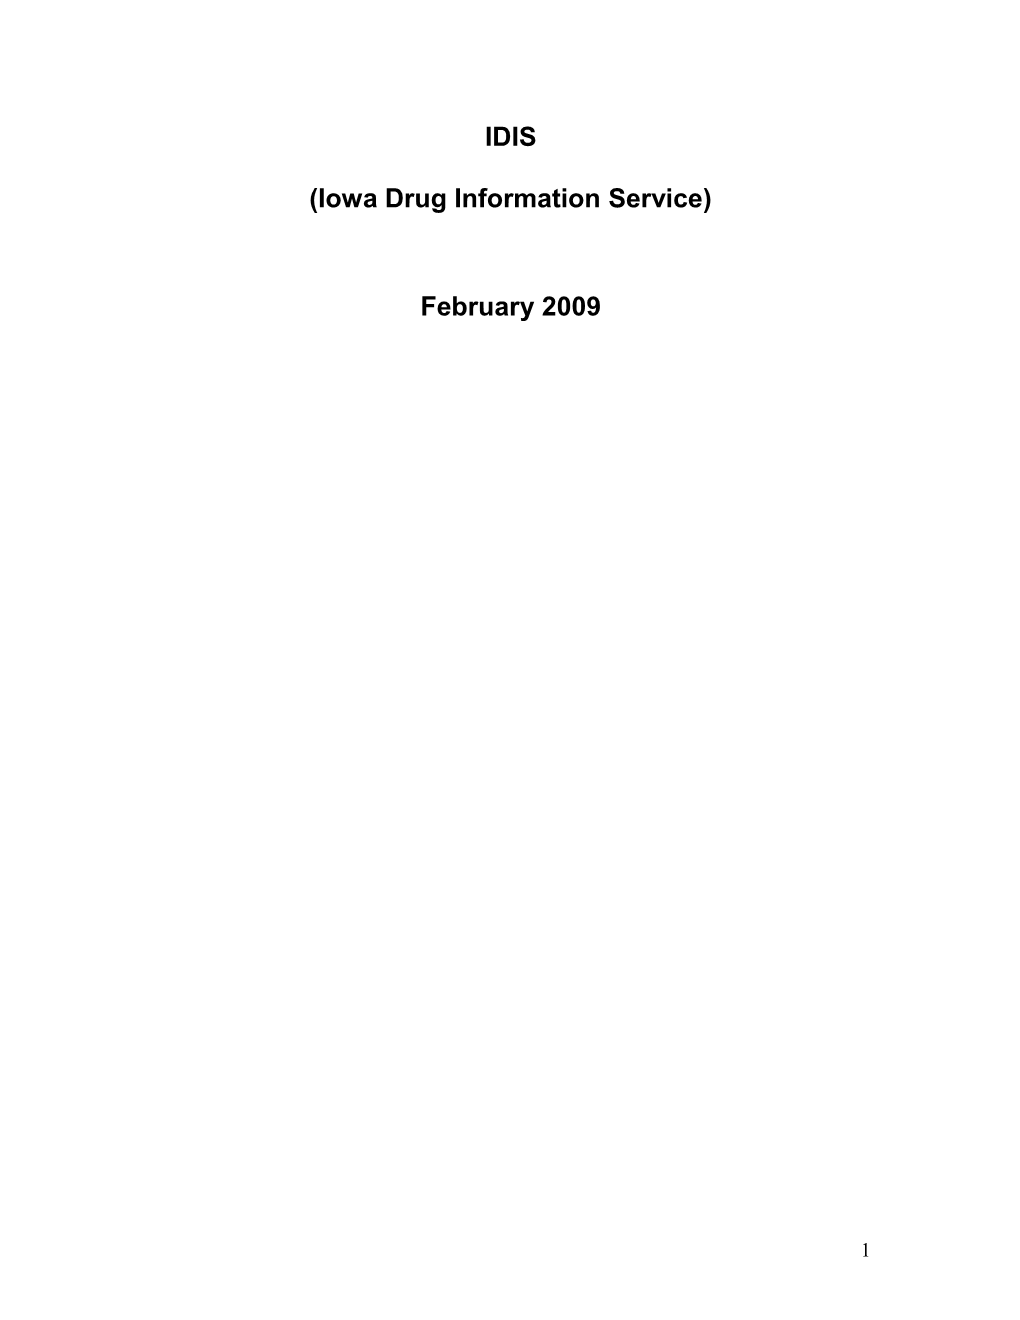 Iowa Drug Information Service